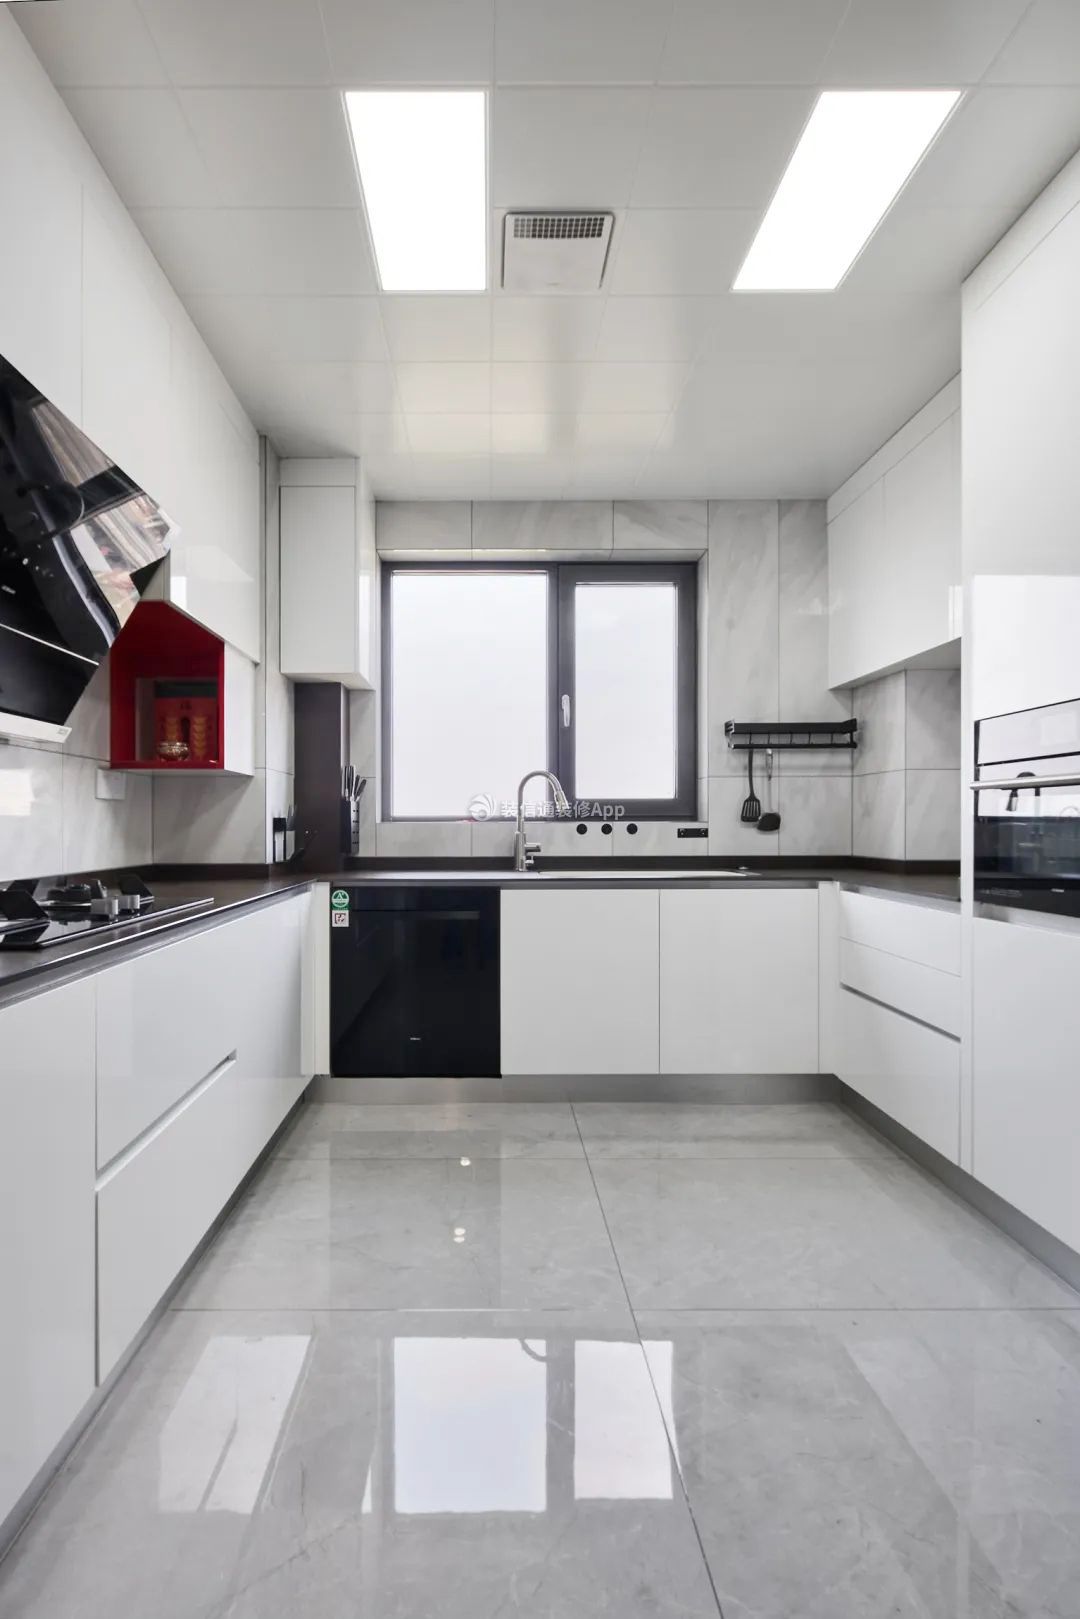 四居室家庭厨房简约风格装修设计图片: